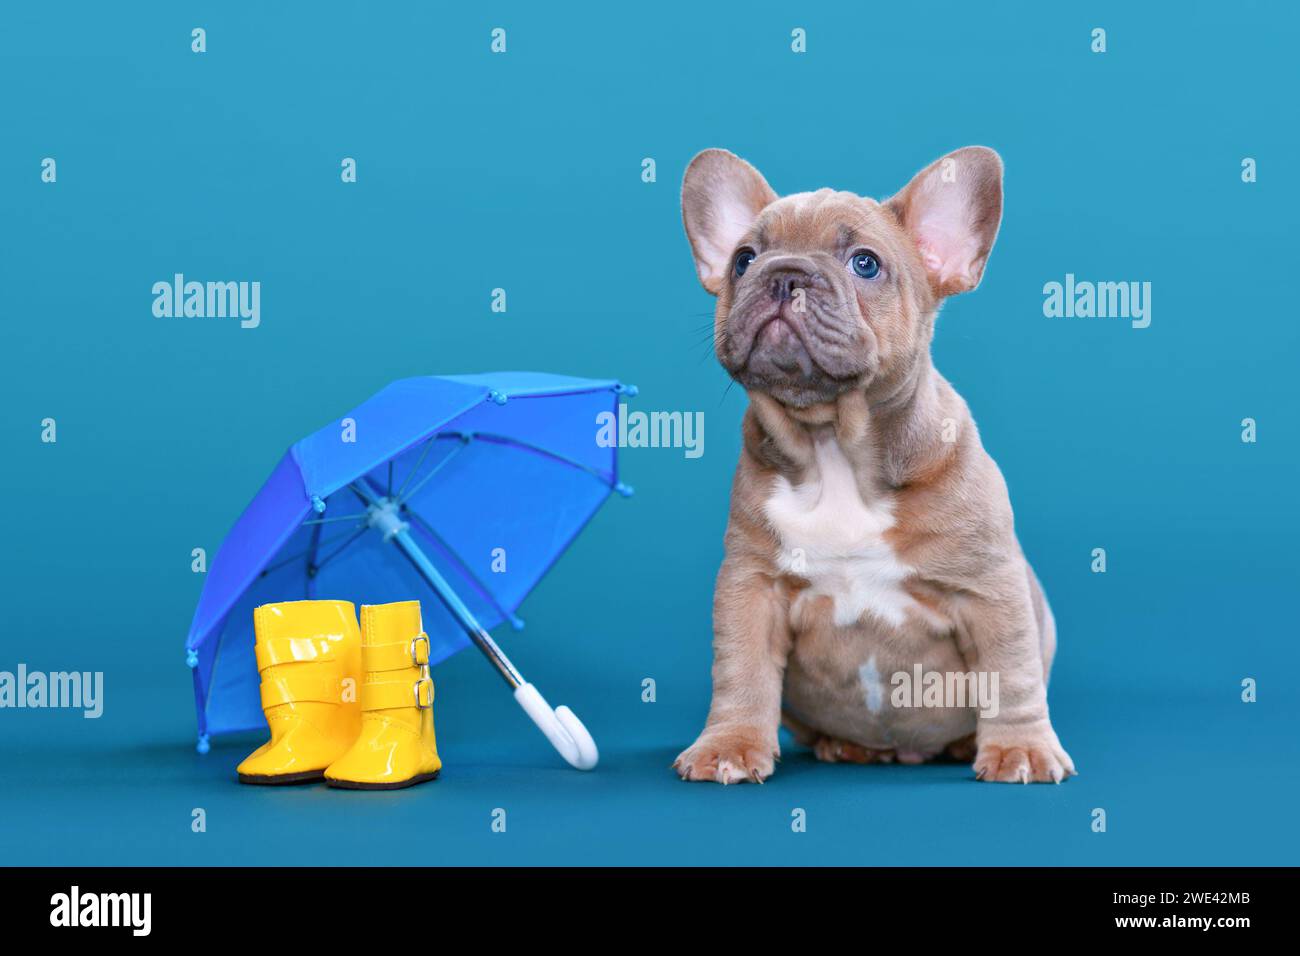 Mignon faon bleu chien Bulldog français chiot à côté de bottes en caoutchouc de pluie et parapluie sur fond bleu Banque D'Images